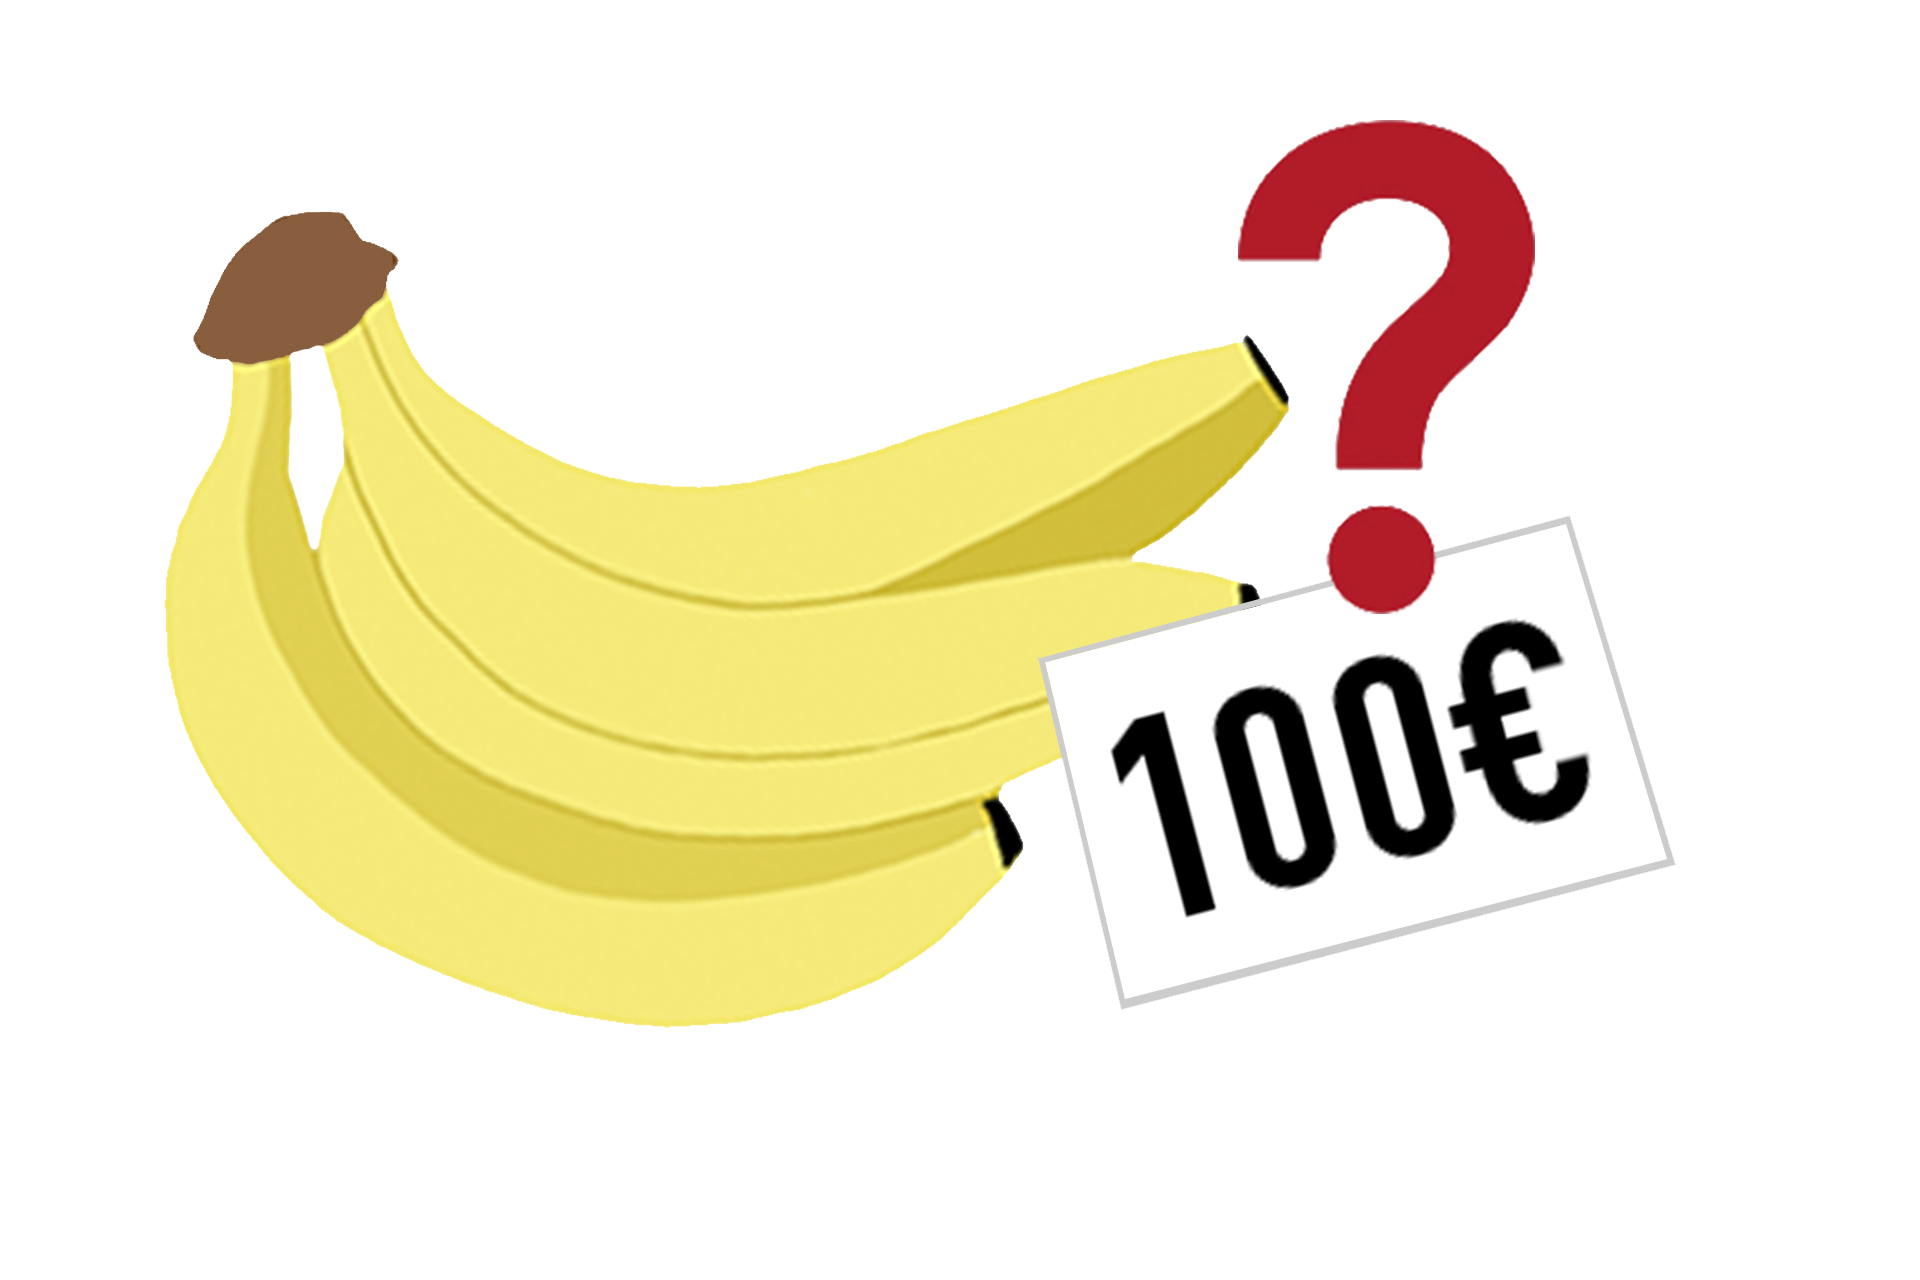 Bananen_Preis